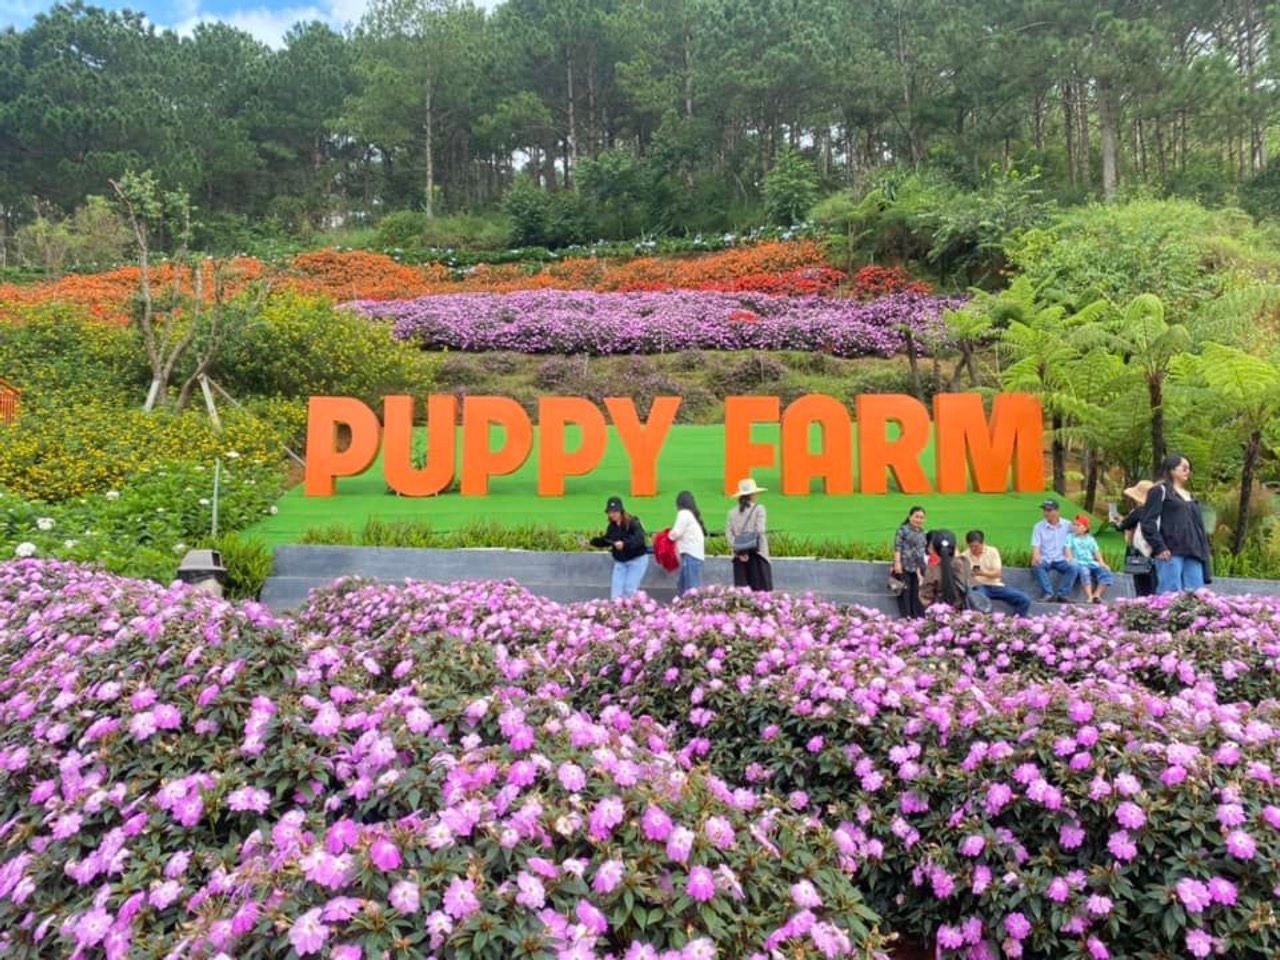 Puppy Farm